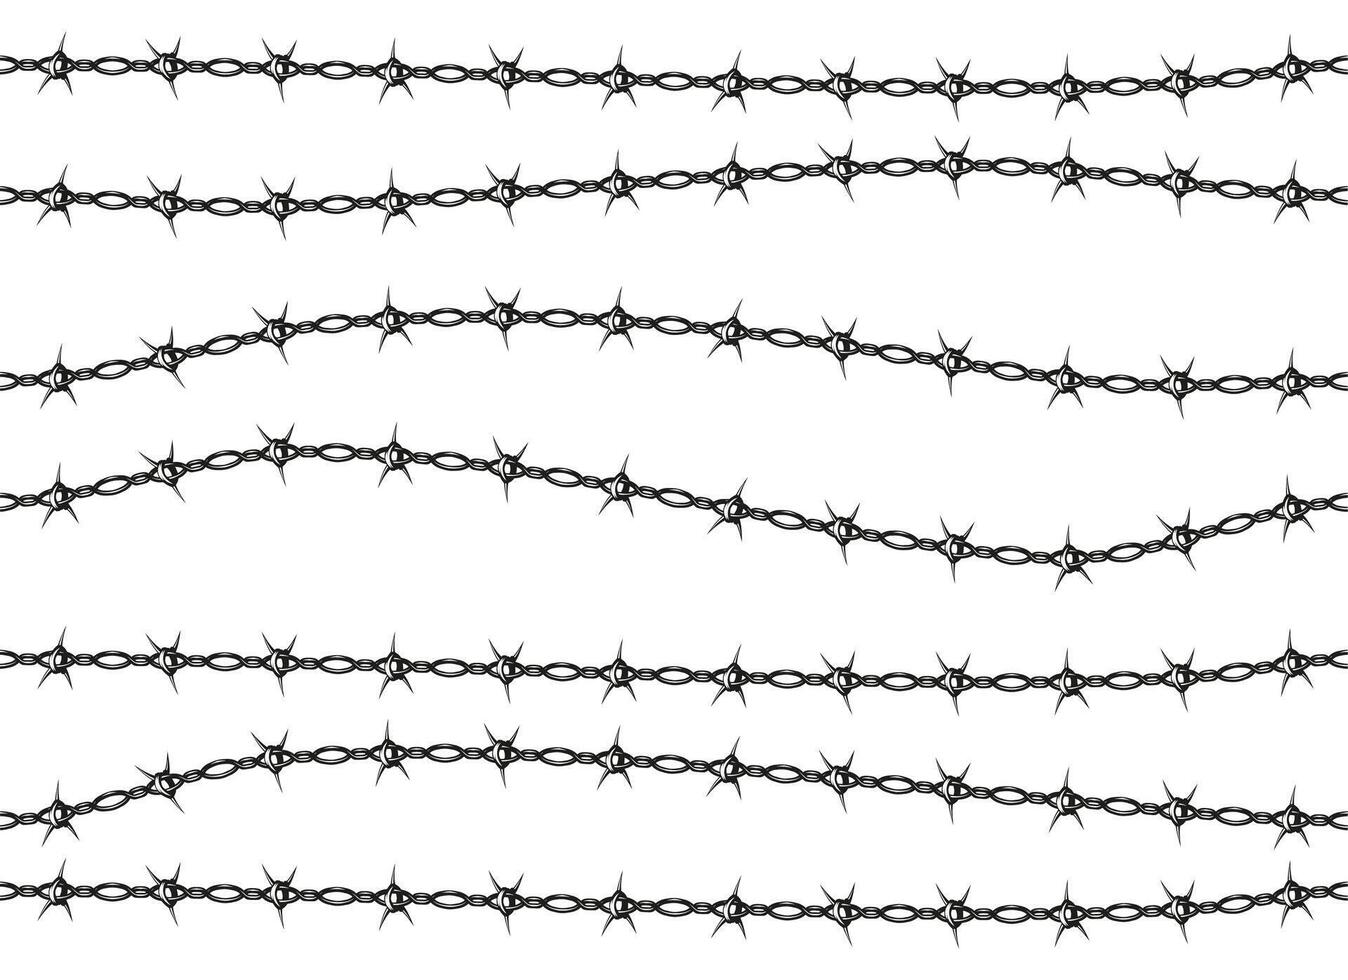 hullingförsedda tråd staket mönster. sömlös säkerhet gräns spika silhuett, armén militär skydd ram och linje design. vektor uppsättning